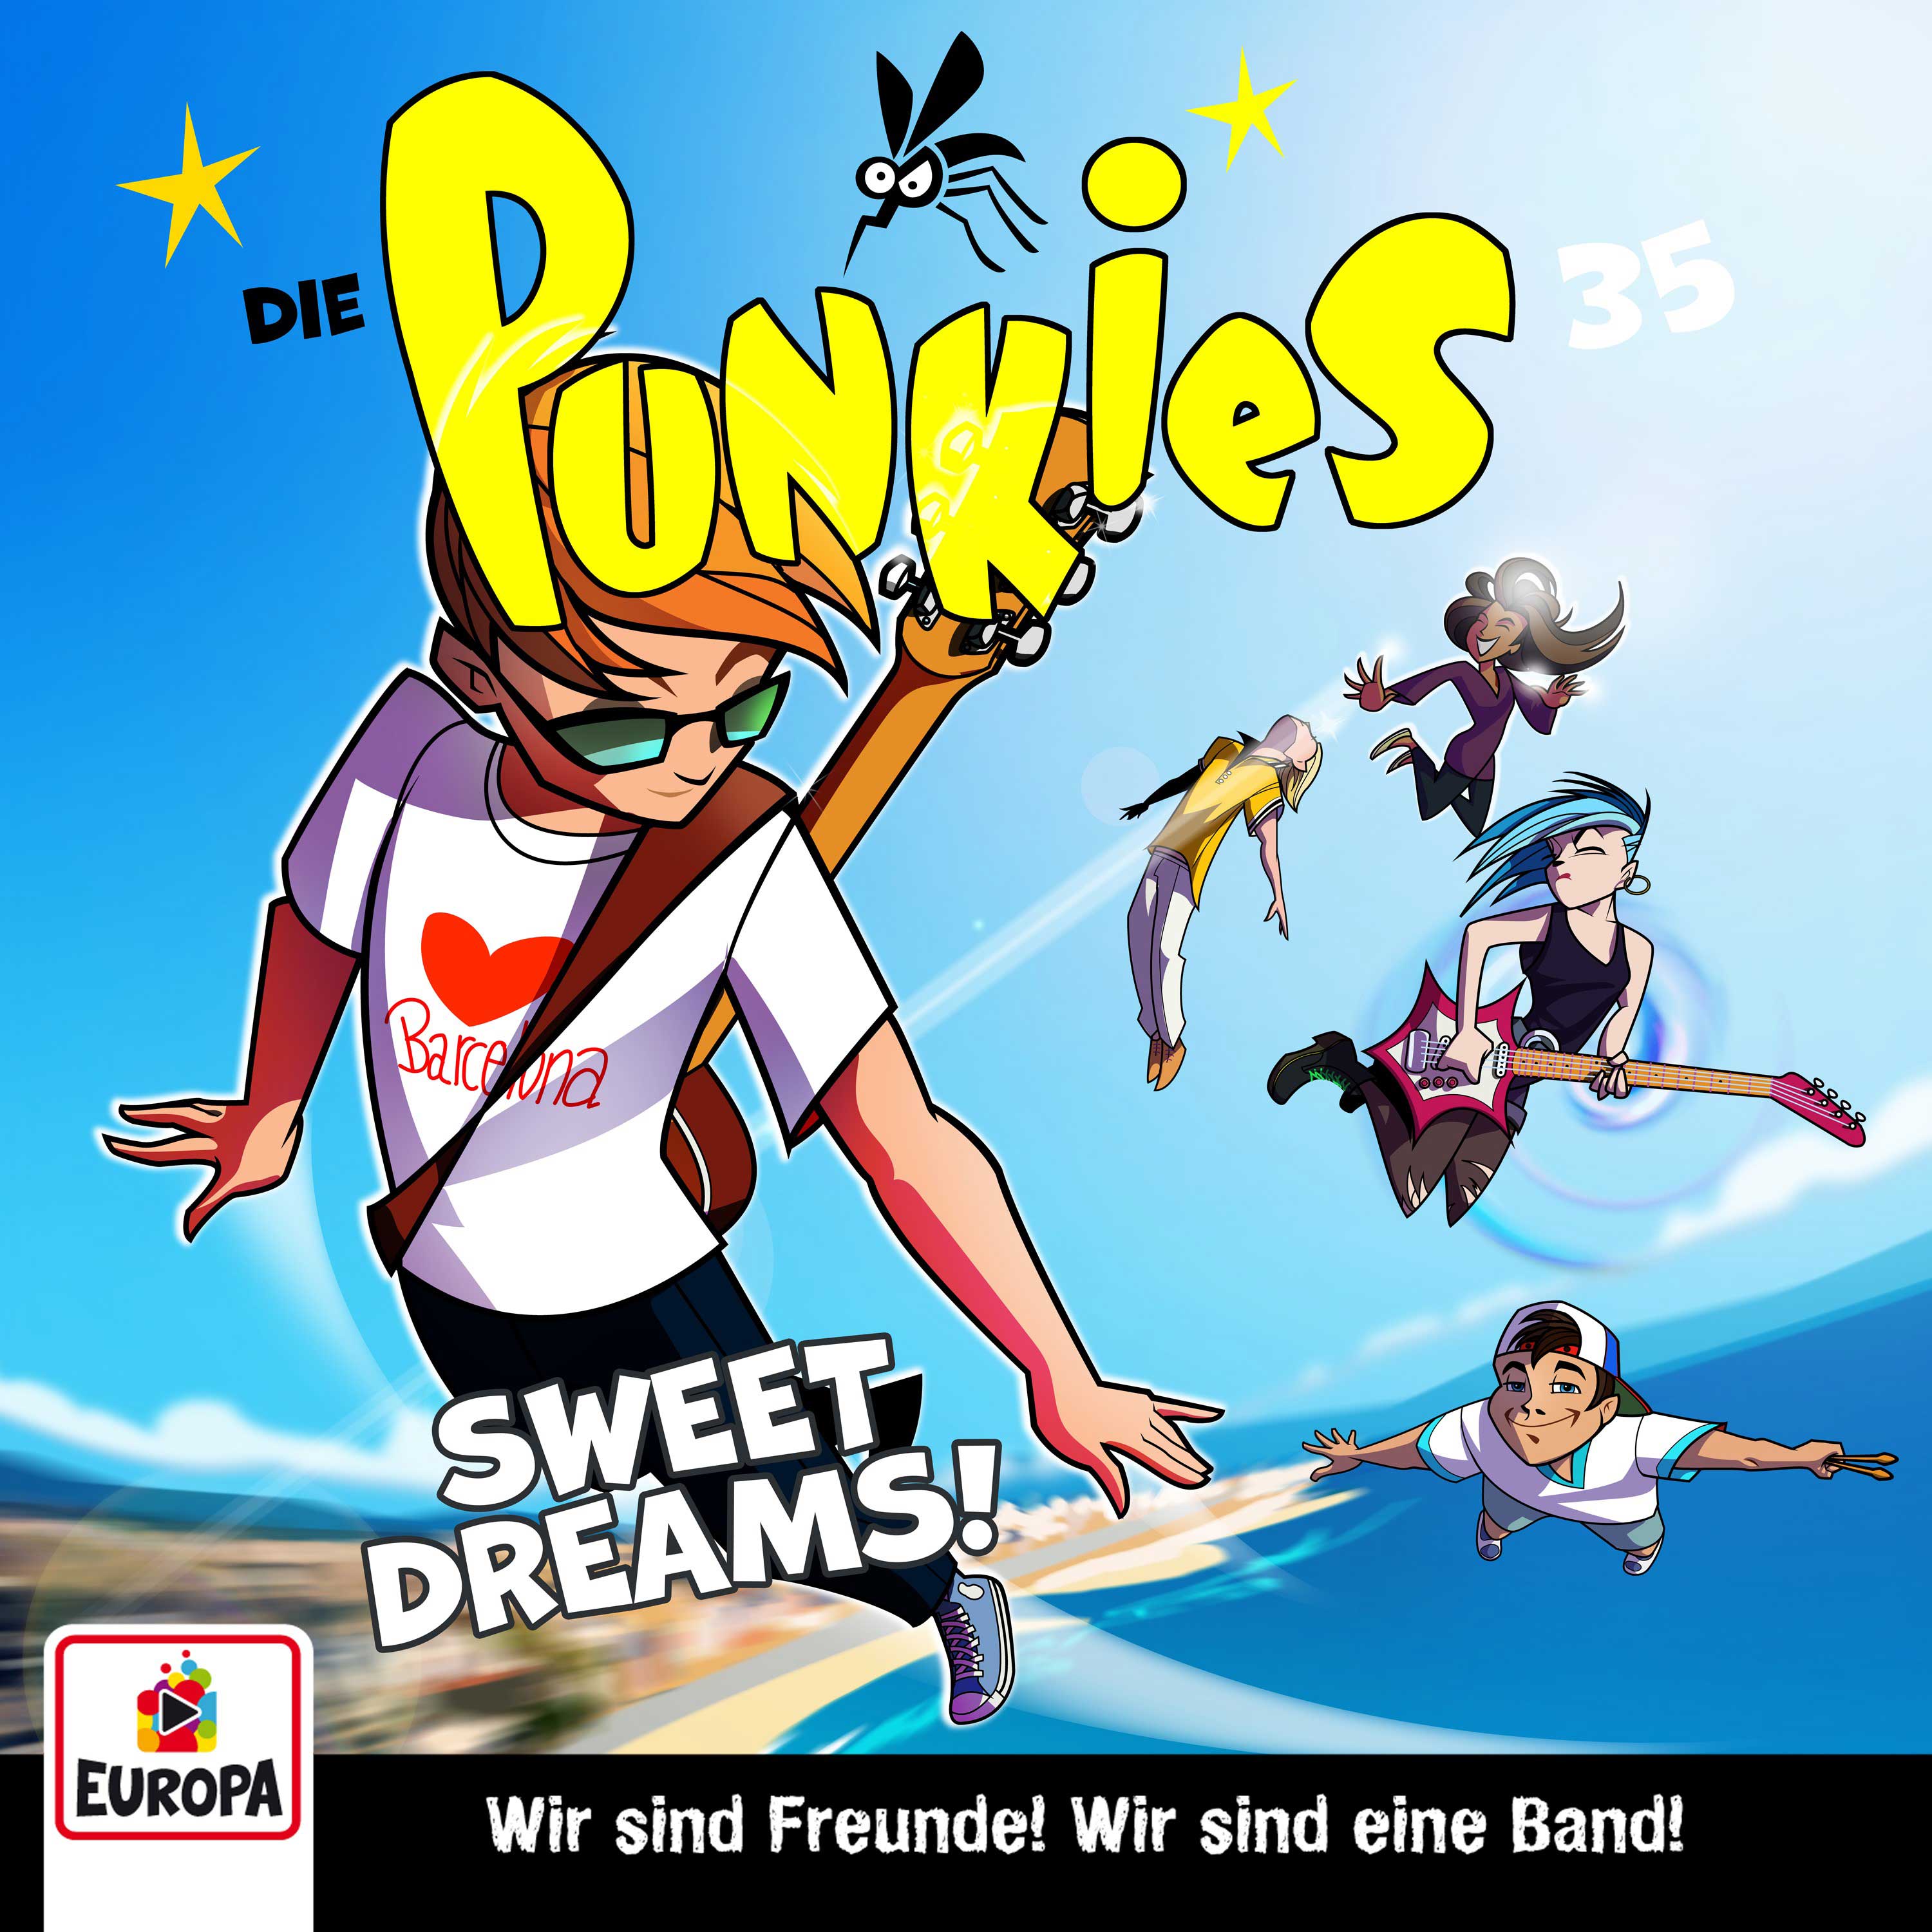 Die Punkies  - Sweet Dreams!